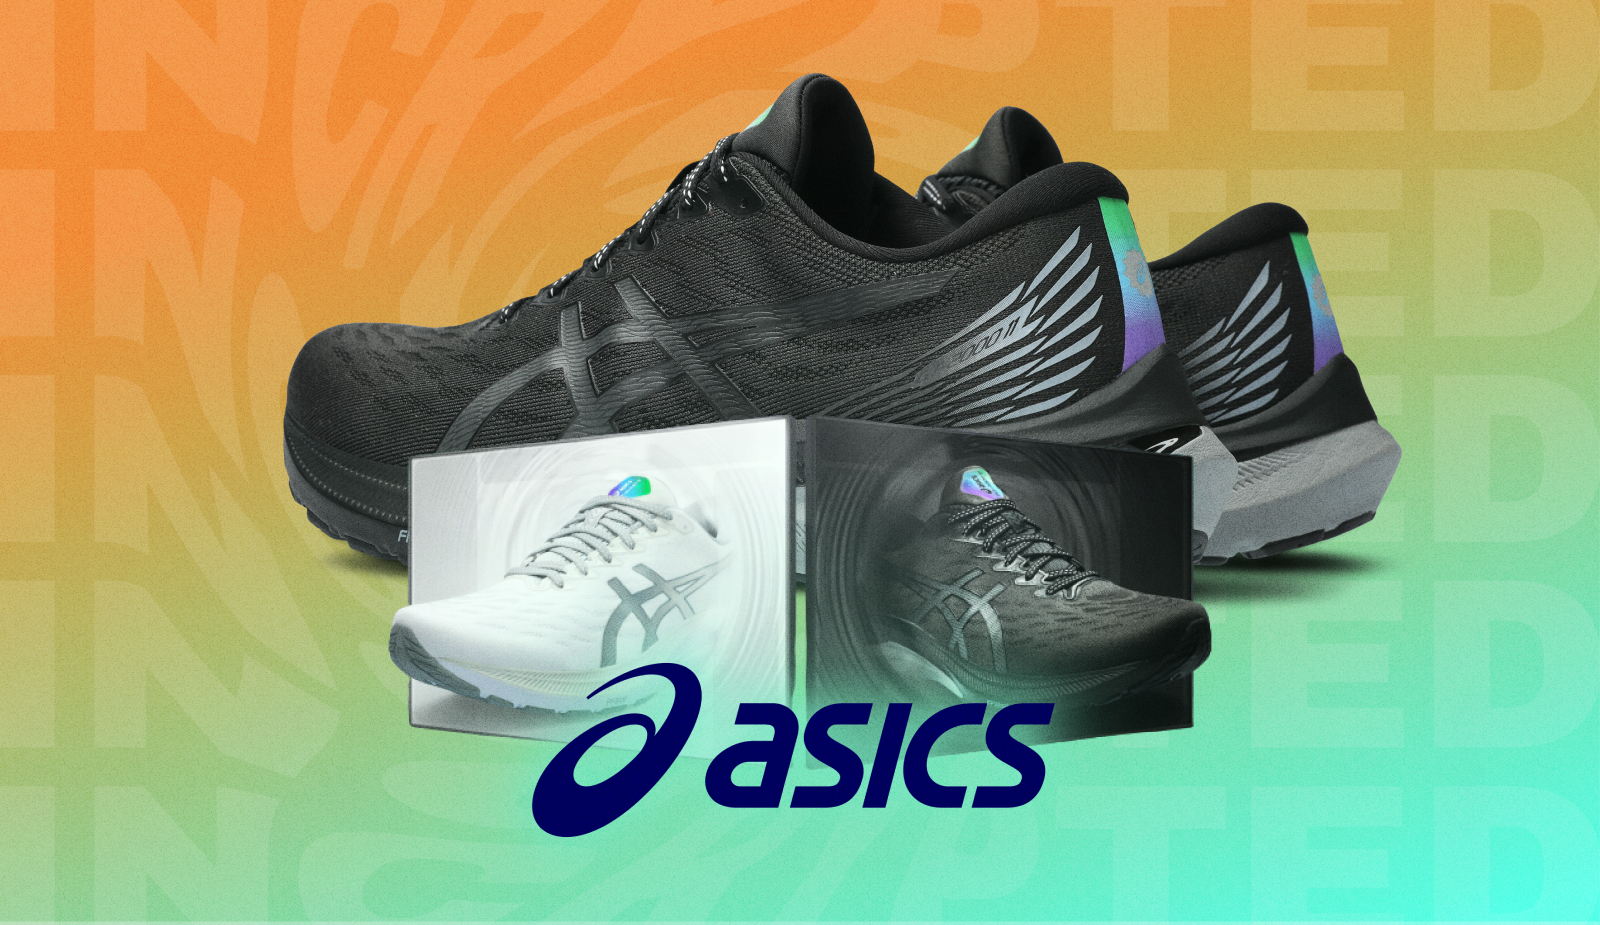 ASICS випустили спеціальні кросівки для фанатів Solana і STEPN. Головний колаж новини.